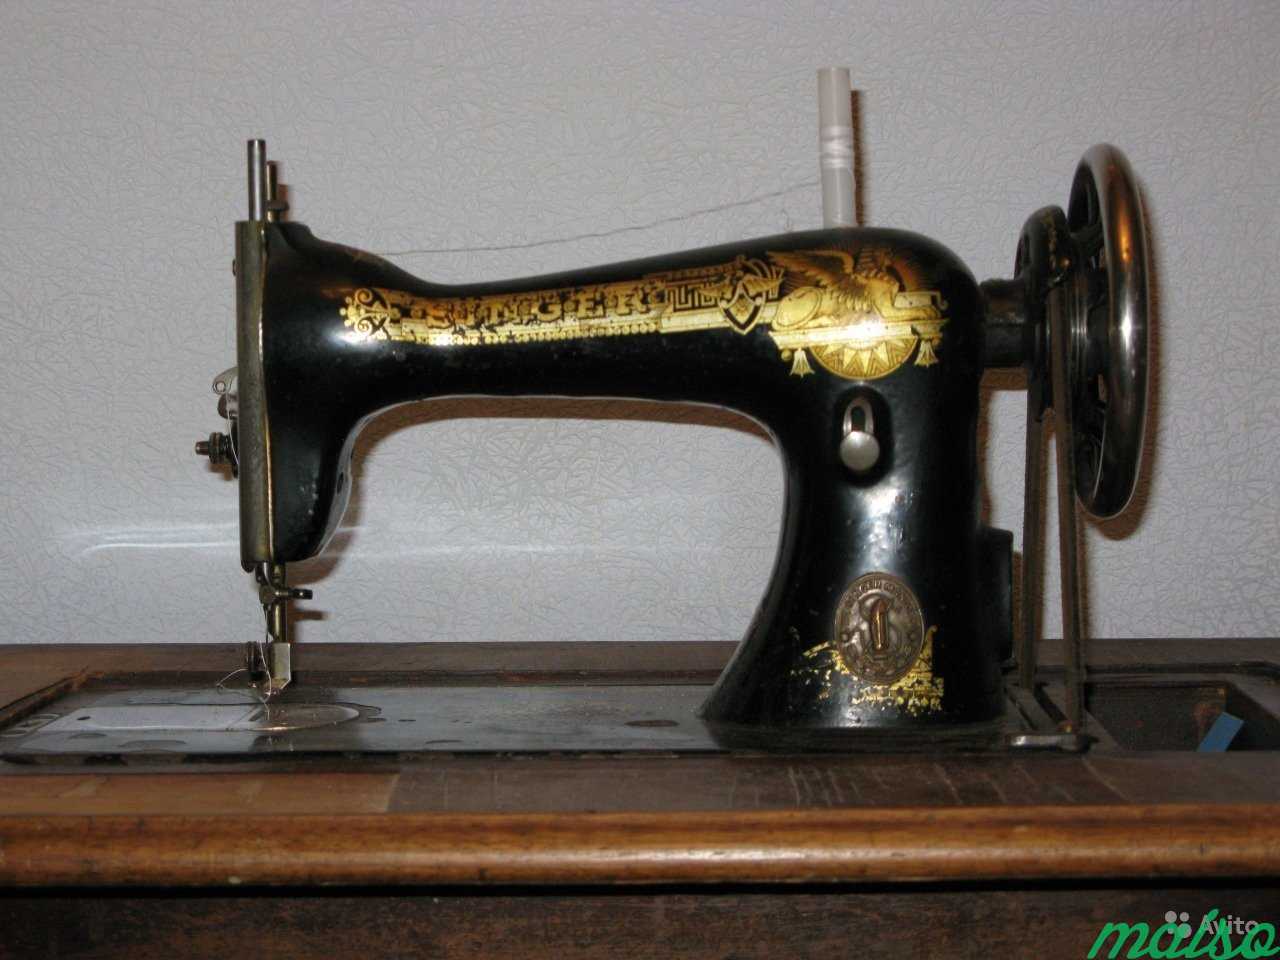 Швейная машинка зингер отзывы. Швейная машинка (Zinger super 2001). Швейная машинка Зингер 1904 года. Швейная машинка Зингер китайского производства. Очень редкие Швейные машинки Зингер.